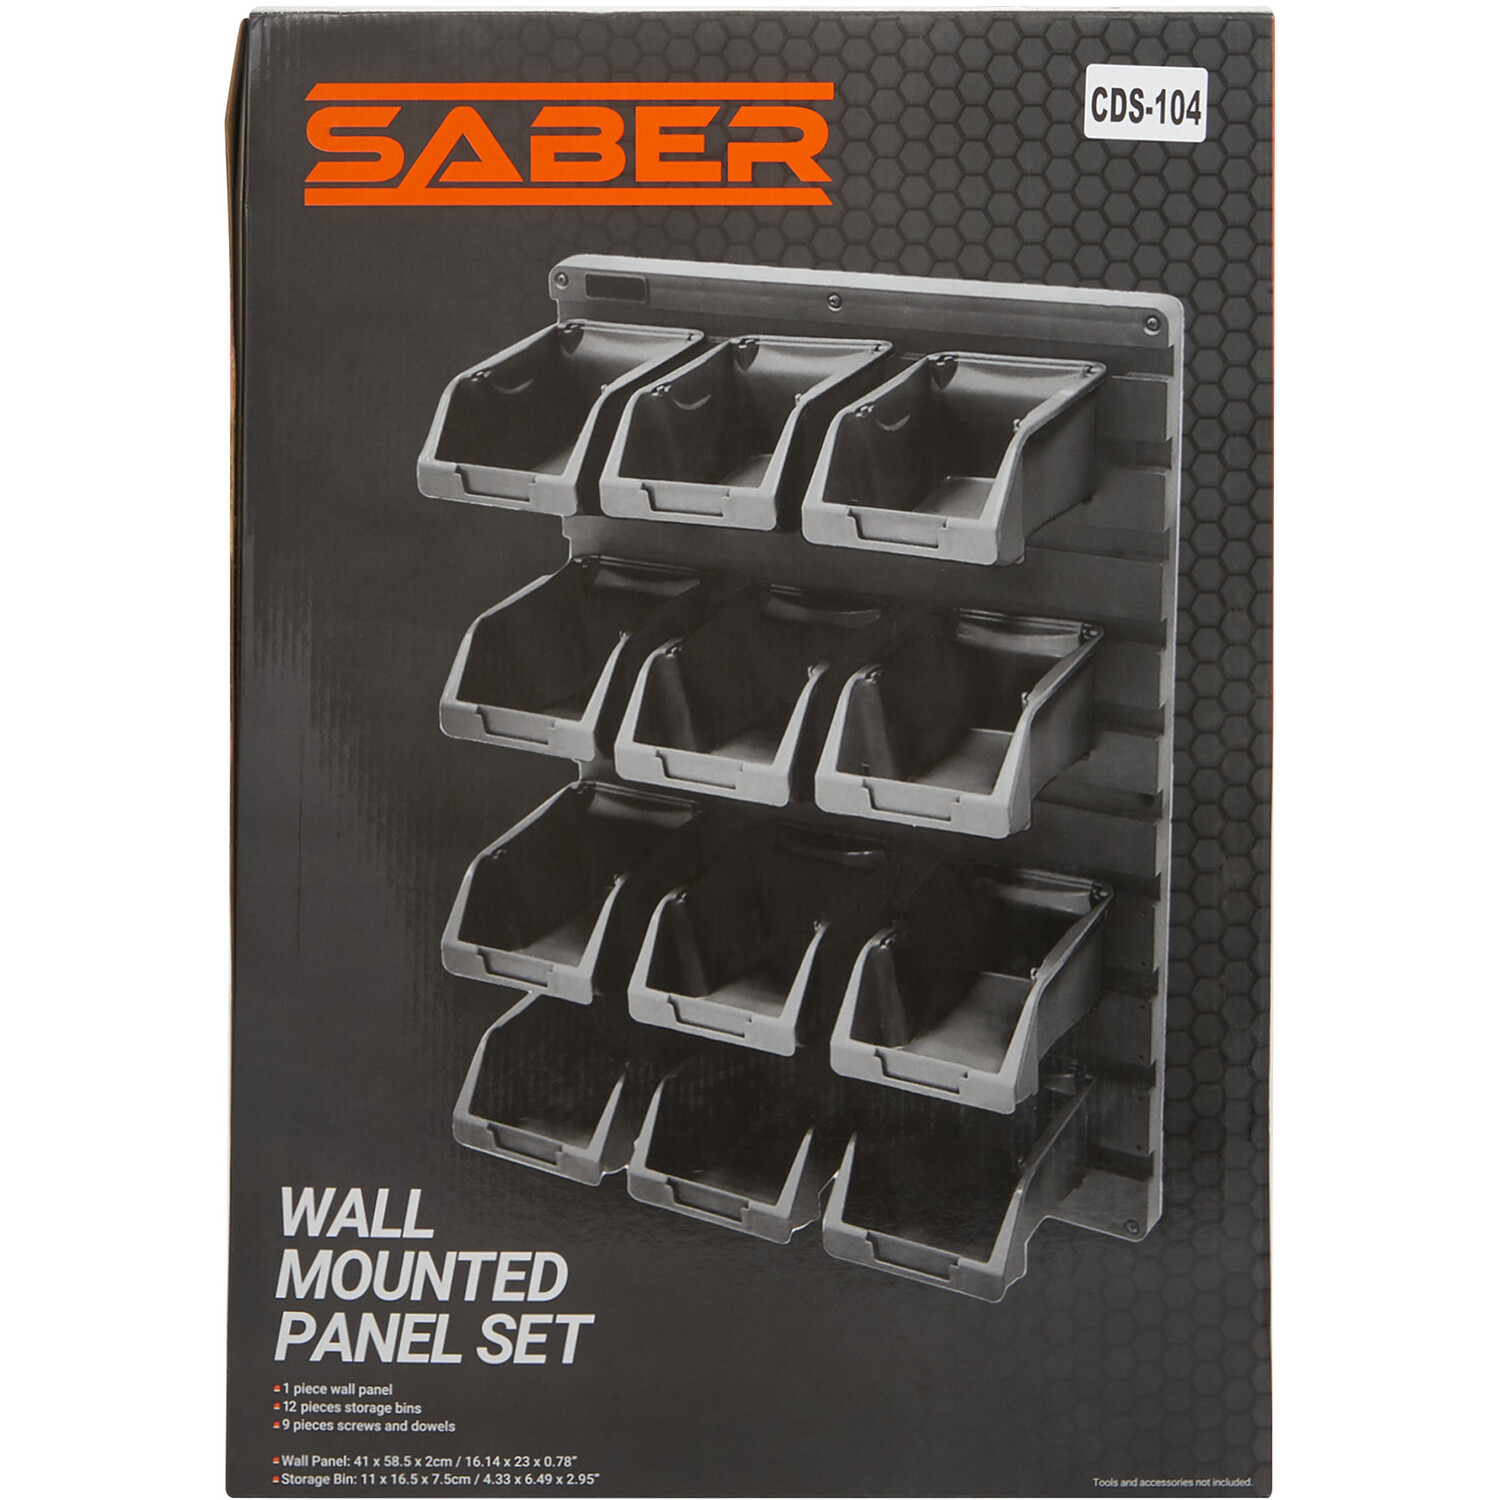 Saber Wall Mounted Panel Tool Organiser Image 2